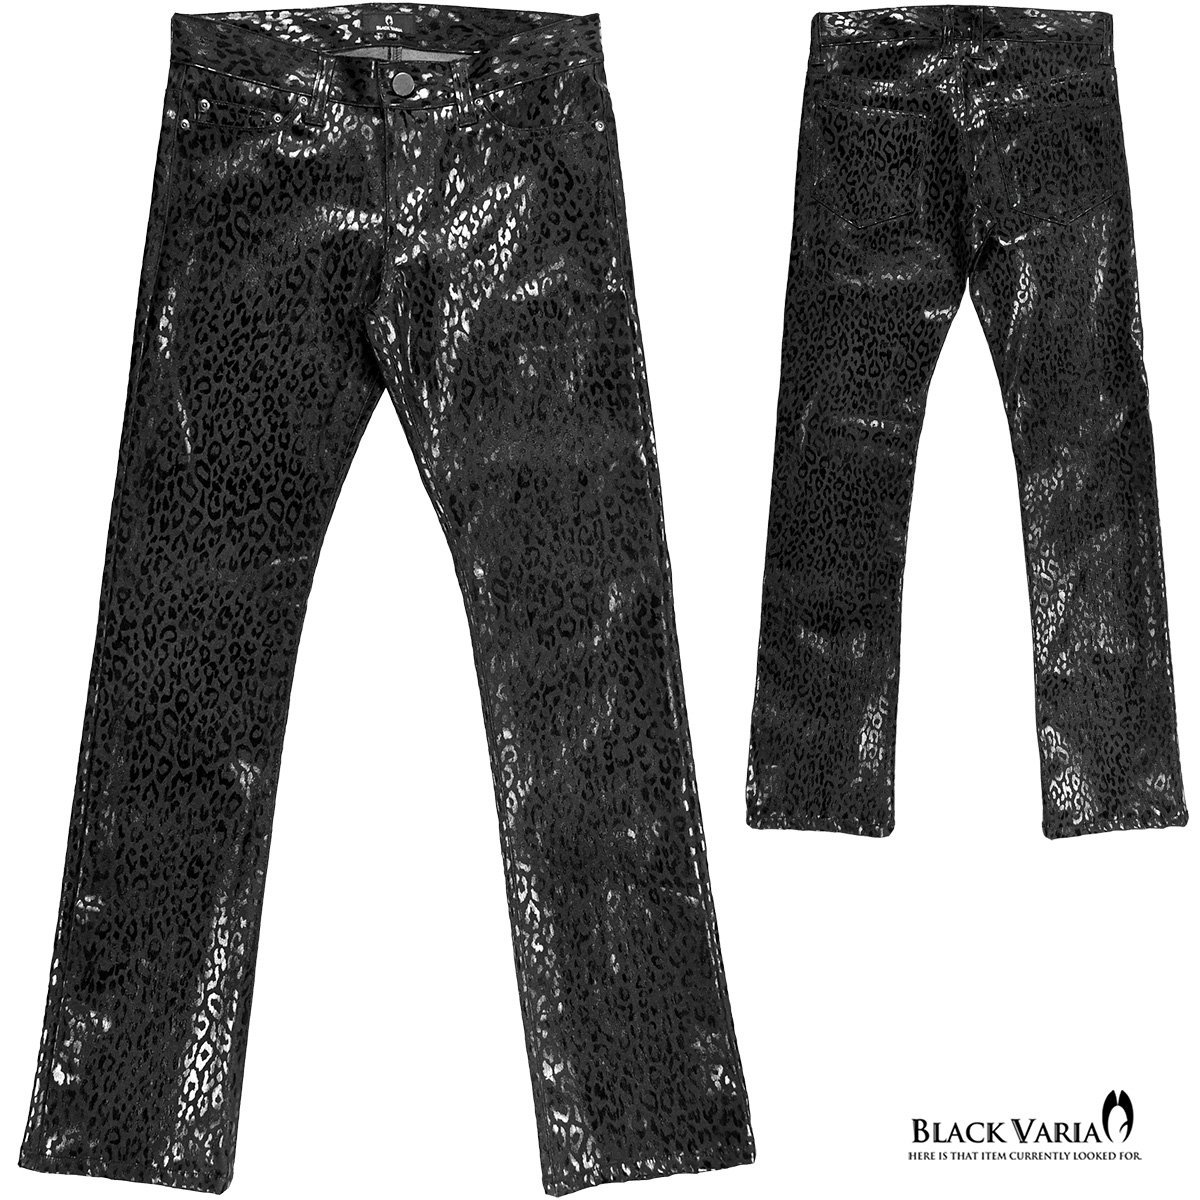 212751-bk BlackVaria ロングパンツ 箔プリント 豹柄 ブーツカット 日本製 ローライズ ボトムス シューカット メンズ(ブラック黒) 3L33 _画像6